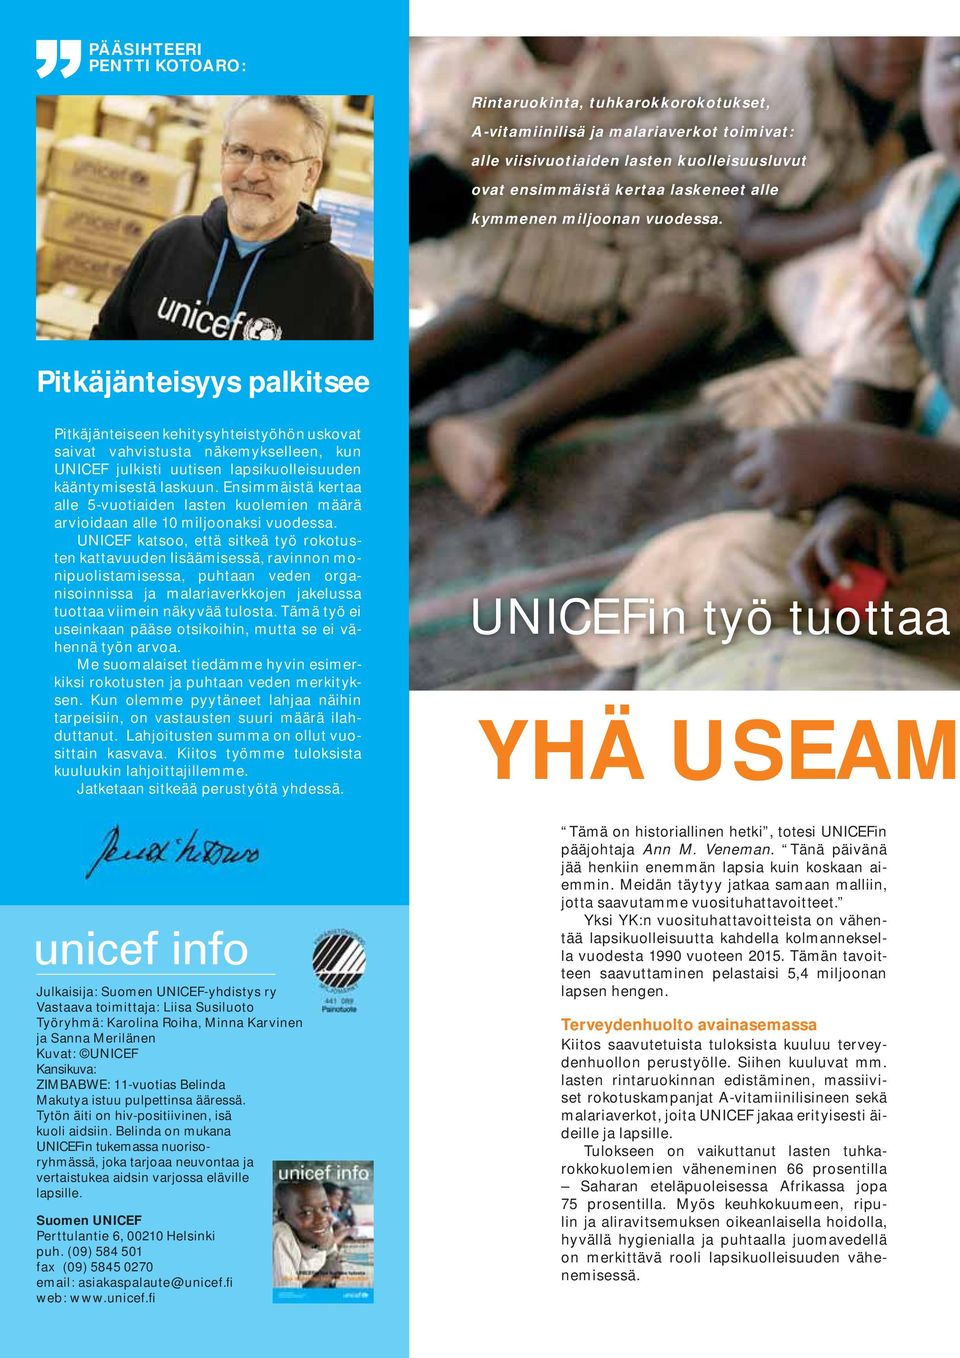 Pitkäjänteisyys palkitsee Pitkäjänteiseen kehitysyhteistyöhön uskovat saivat vahvistusta näkemykselleen, kun UNICEF julkisti uutisen lapsikuolleisuuden kääntymisestä laskuun.